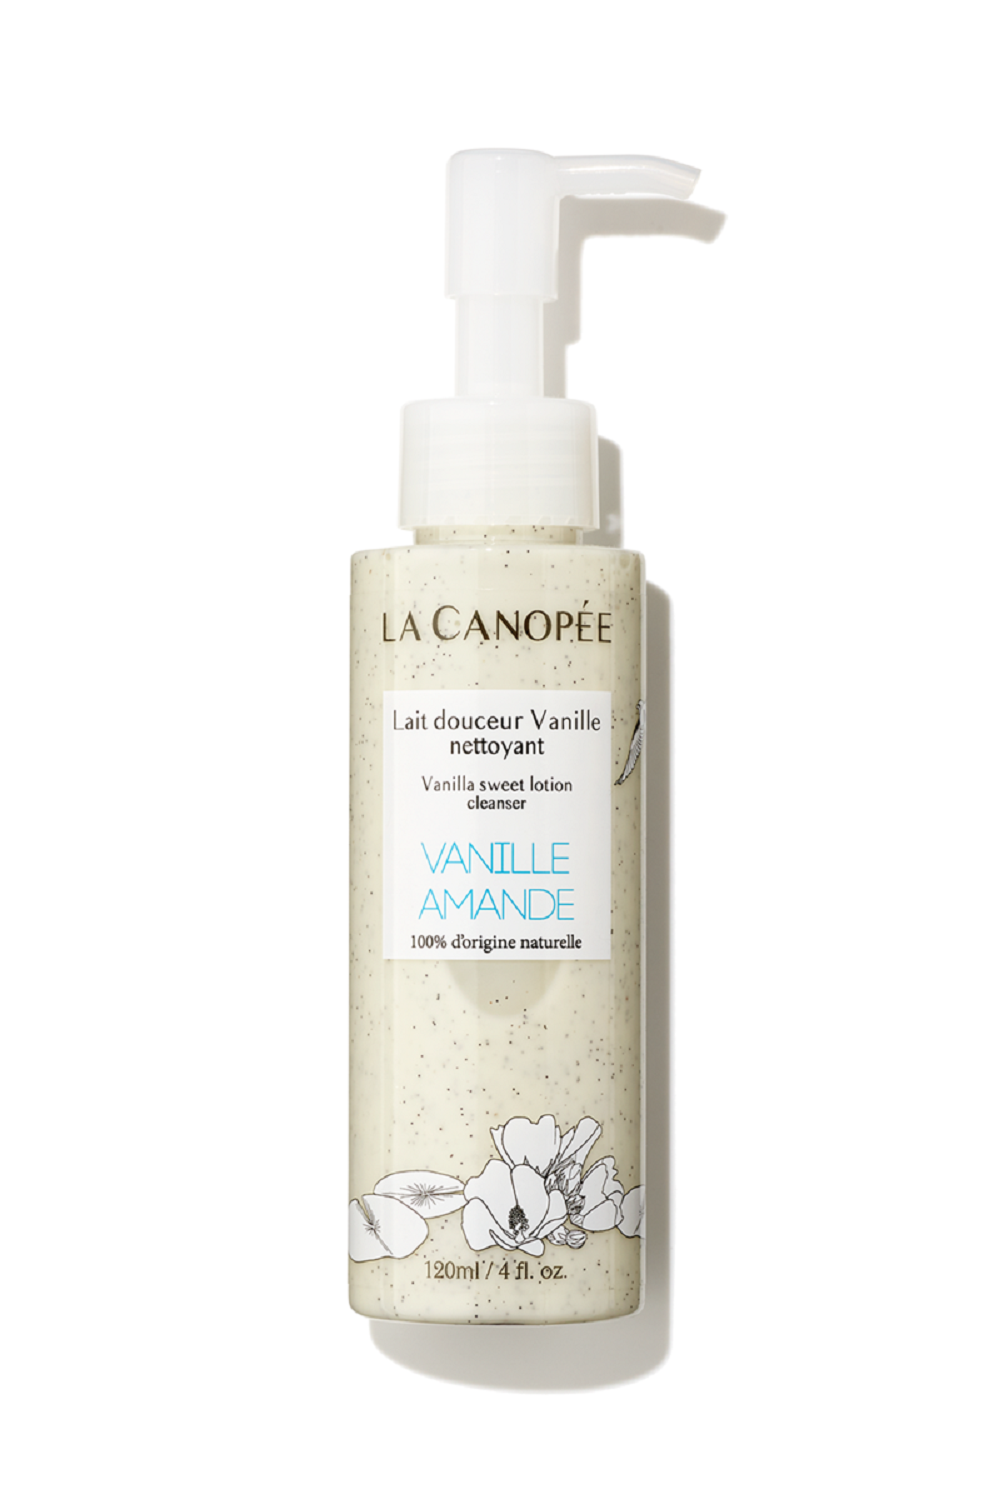 Lait douceur vanille nettoyant - 120ml - LA CANOPÉE